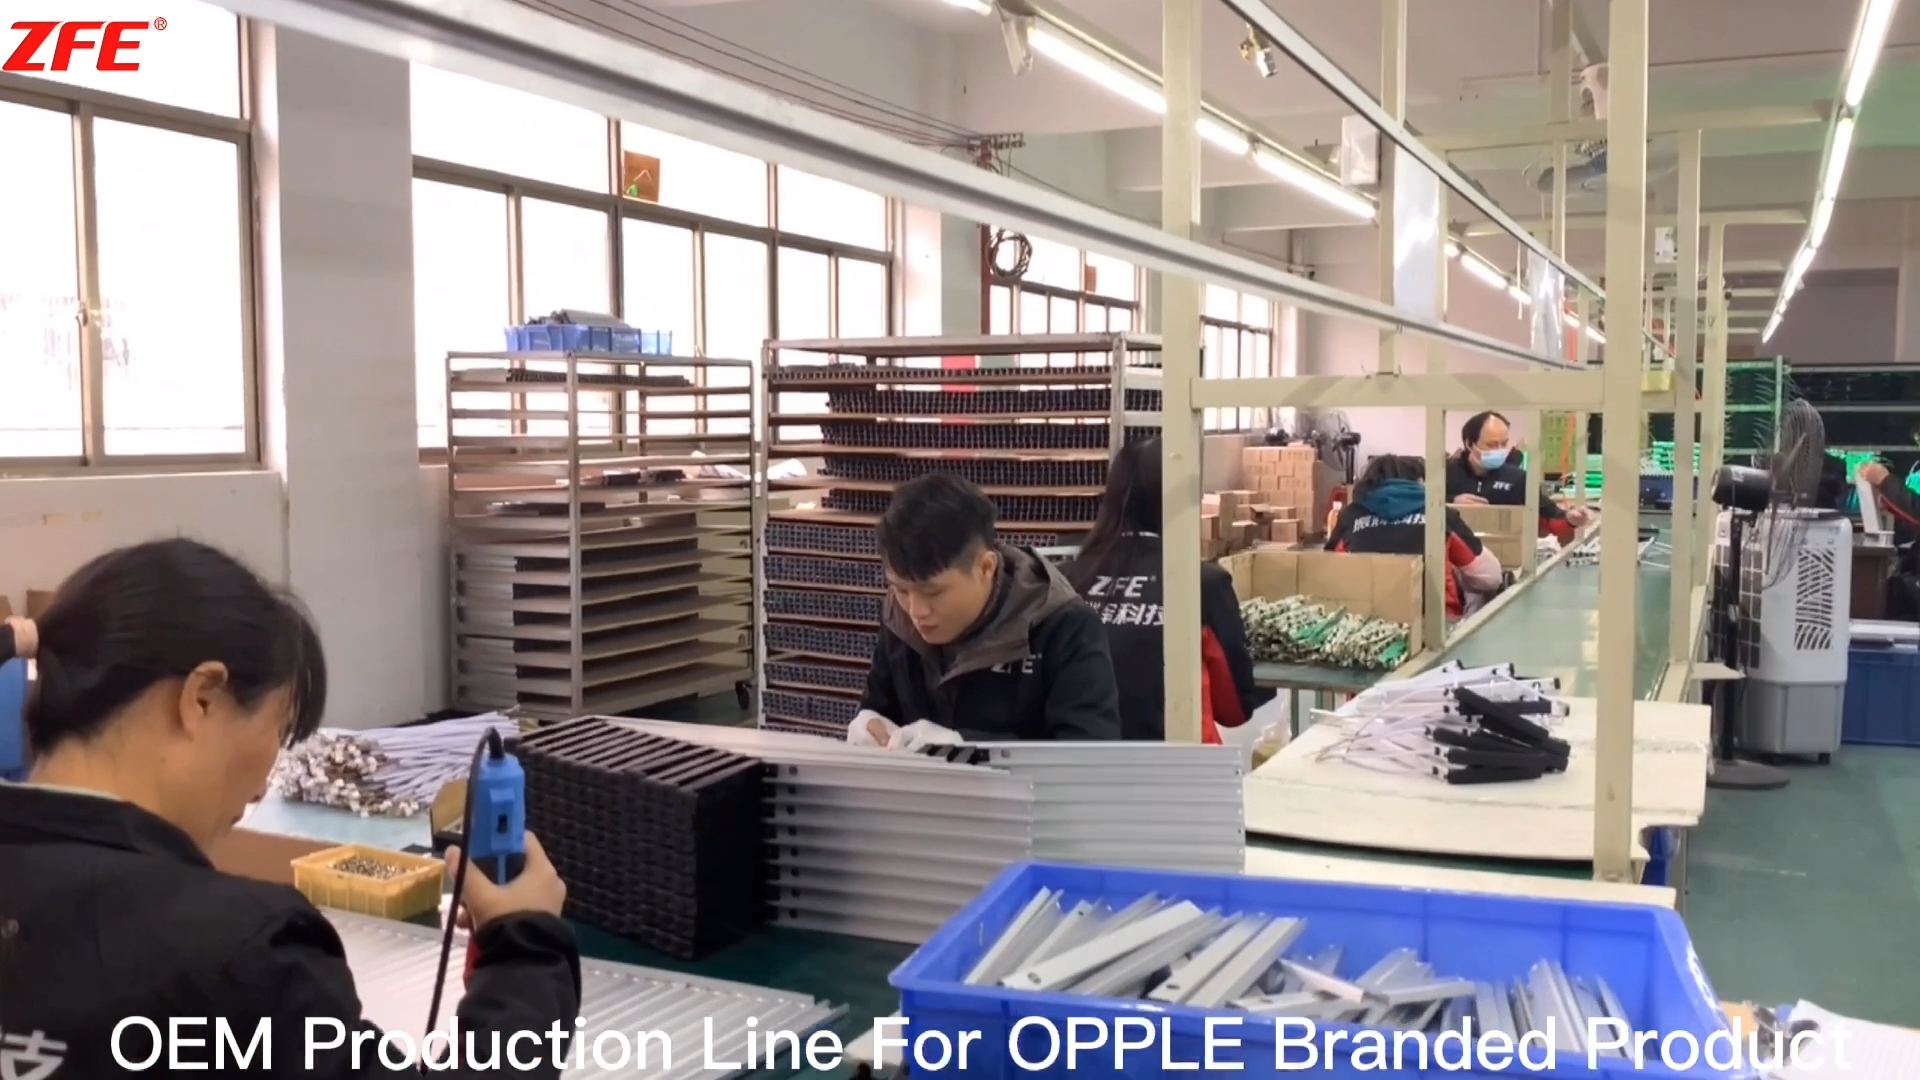 خط تولید سفارشی OEM برای محصول با مارک OPPLE تولید شده توسط فناوری آتش نشانی گوانگدونگ ژنهوی